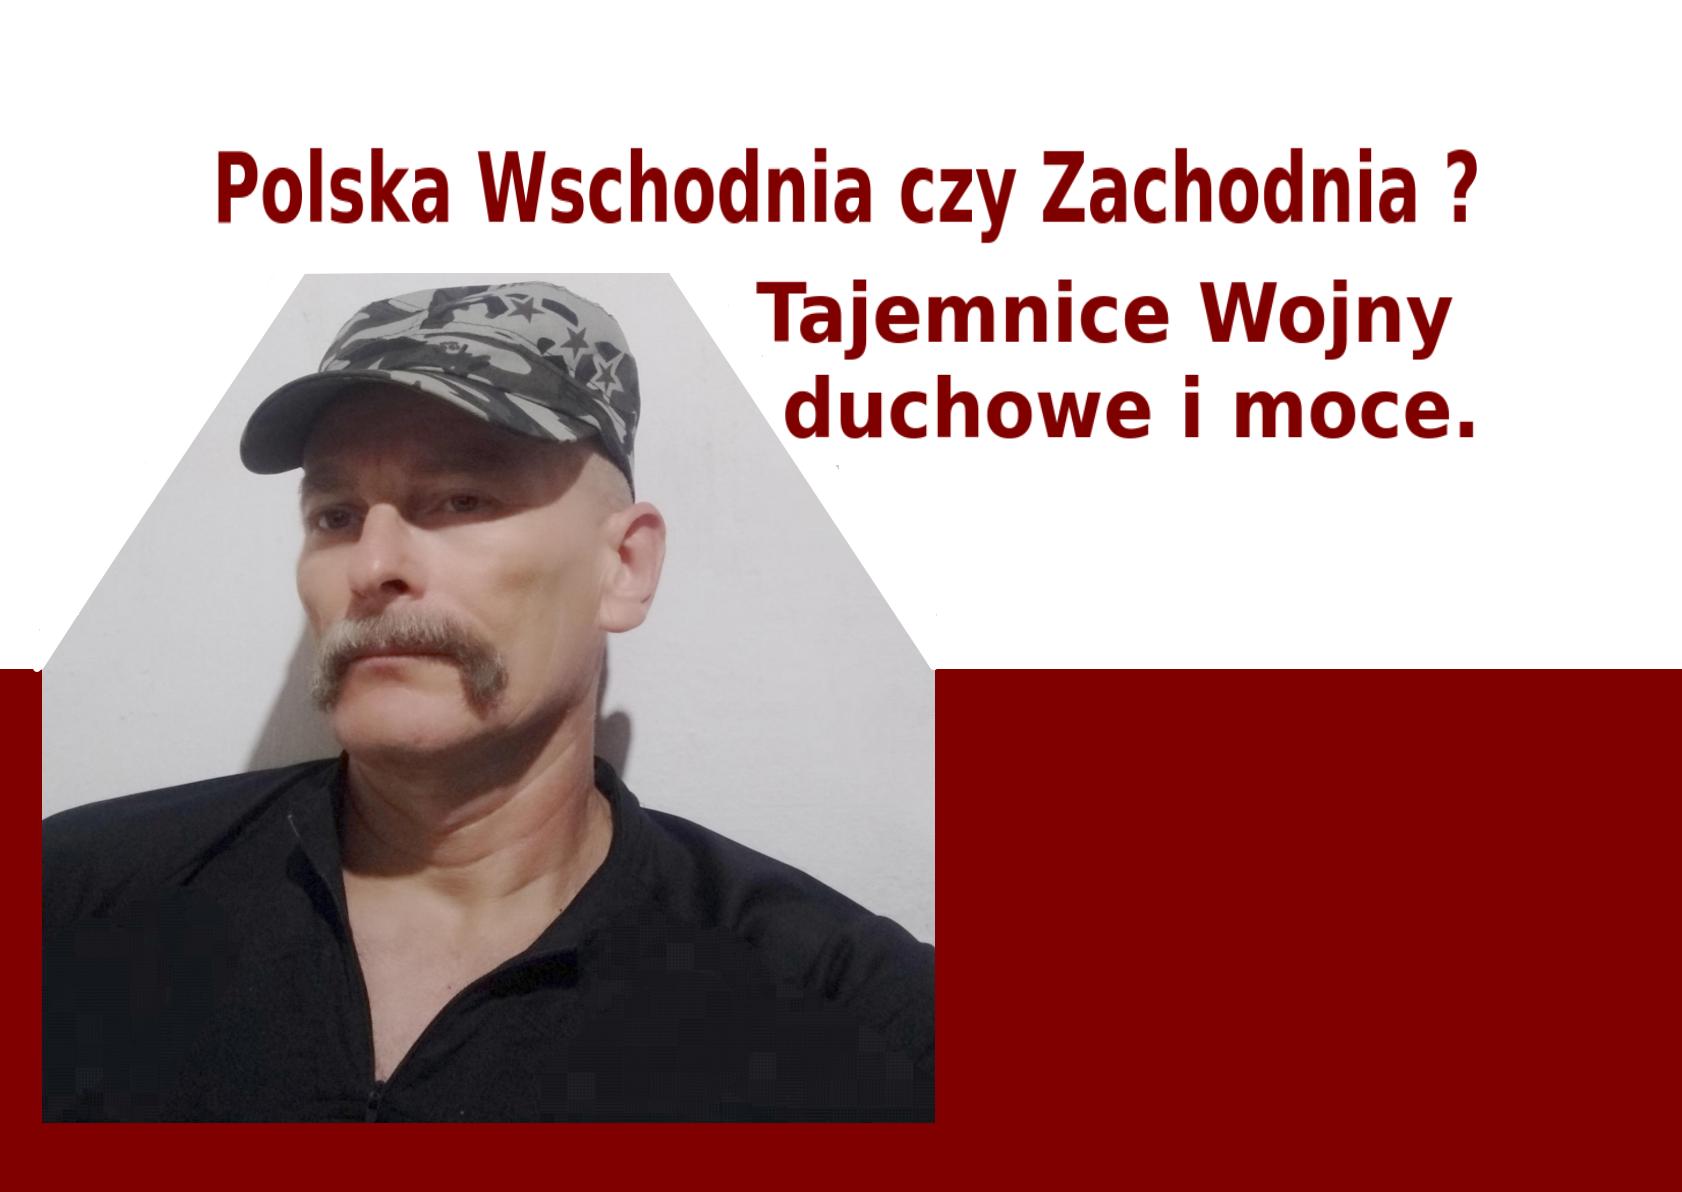 Polska Wschodnia pokona Polskę Zachodnią???
Różnica między Słowianin a Slavik eslavo.